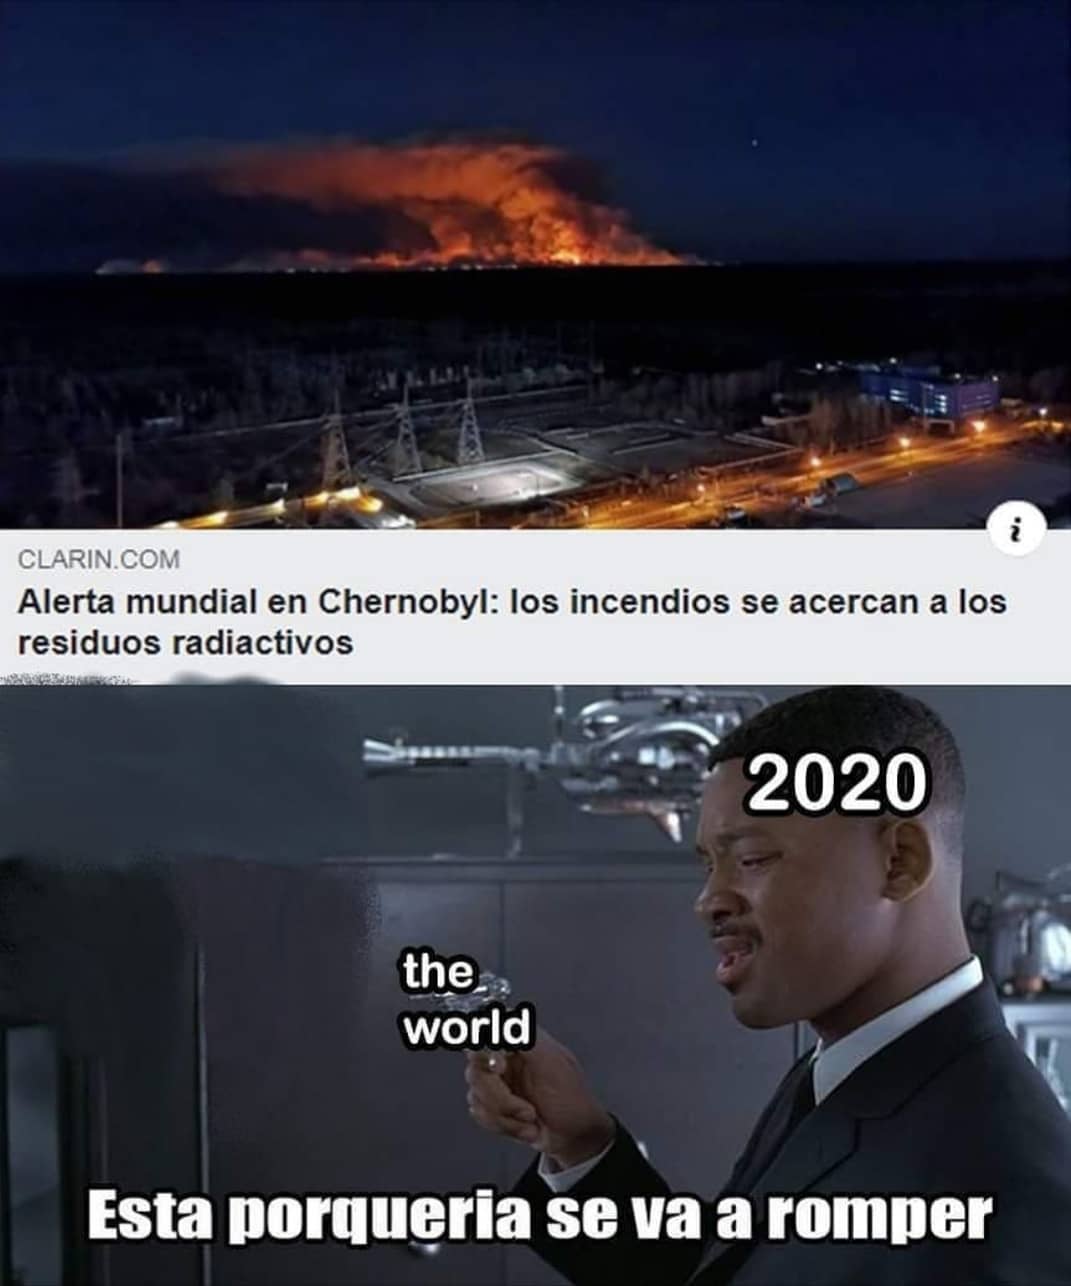 Alerta mundial en Chernobyl: los incendios se acercan a los residuos radiactivos. 2020. The world. Esta porquería se va a romper.